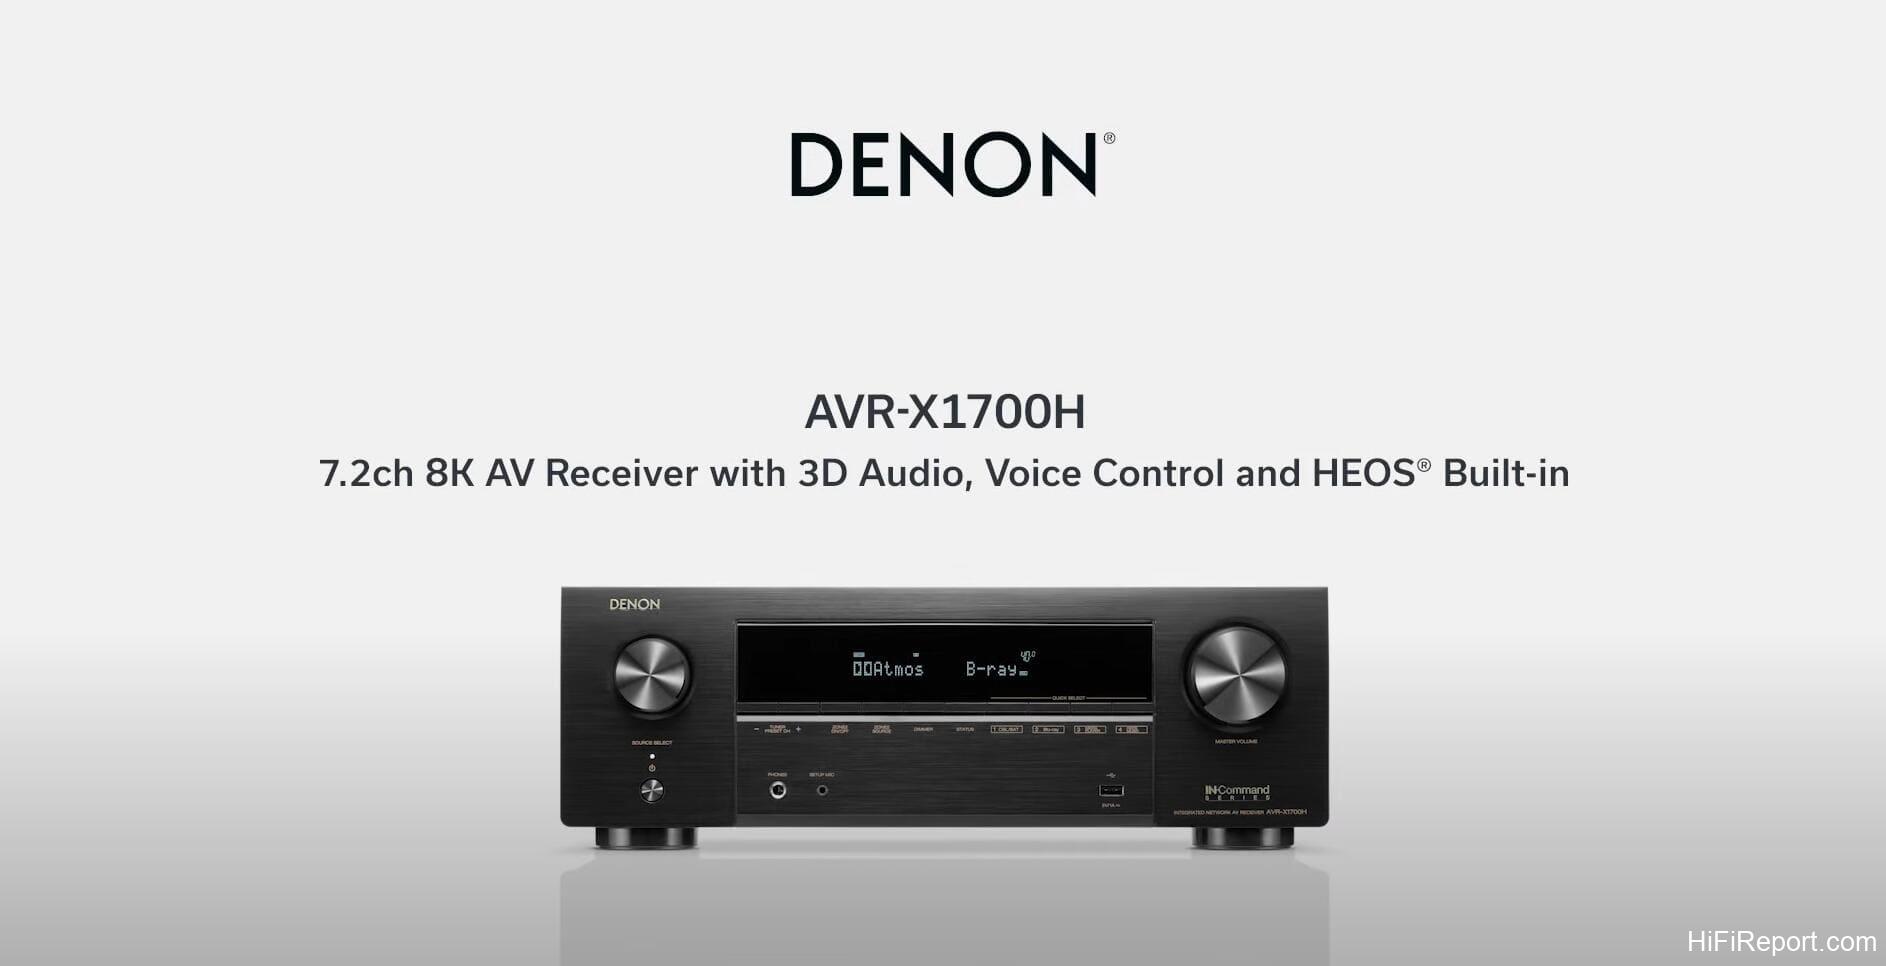 Denon AVR-X1700H 7.2 Channel AV Receiver Review – HiFiReport